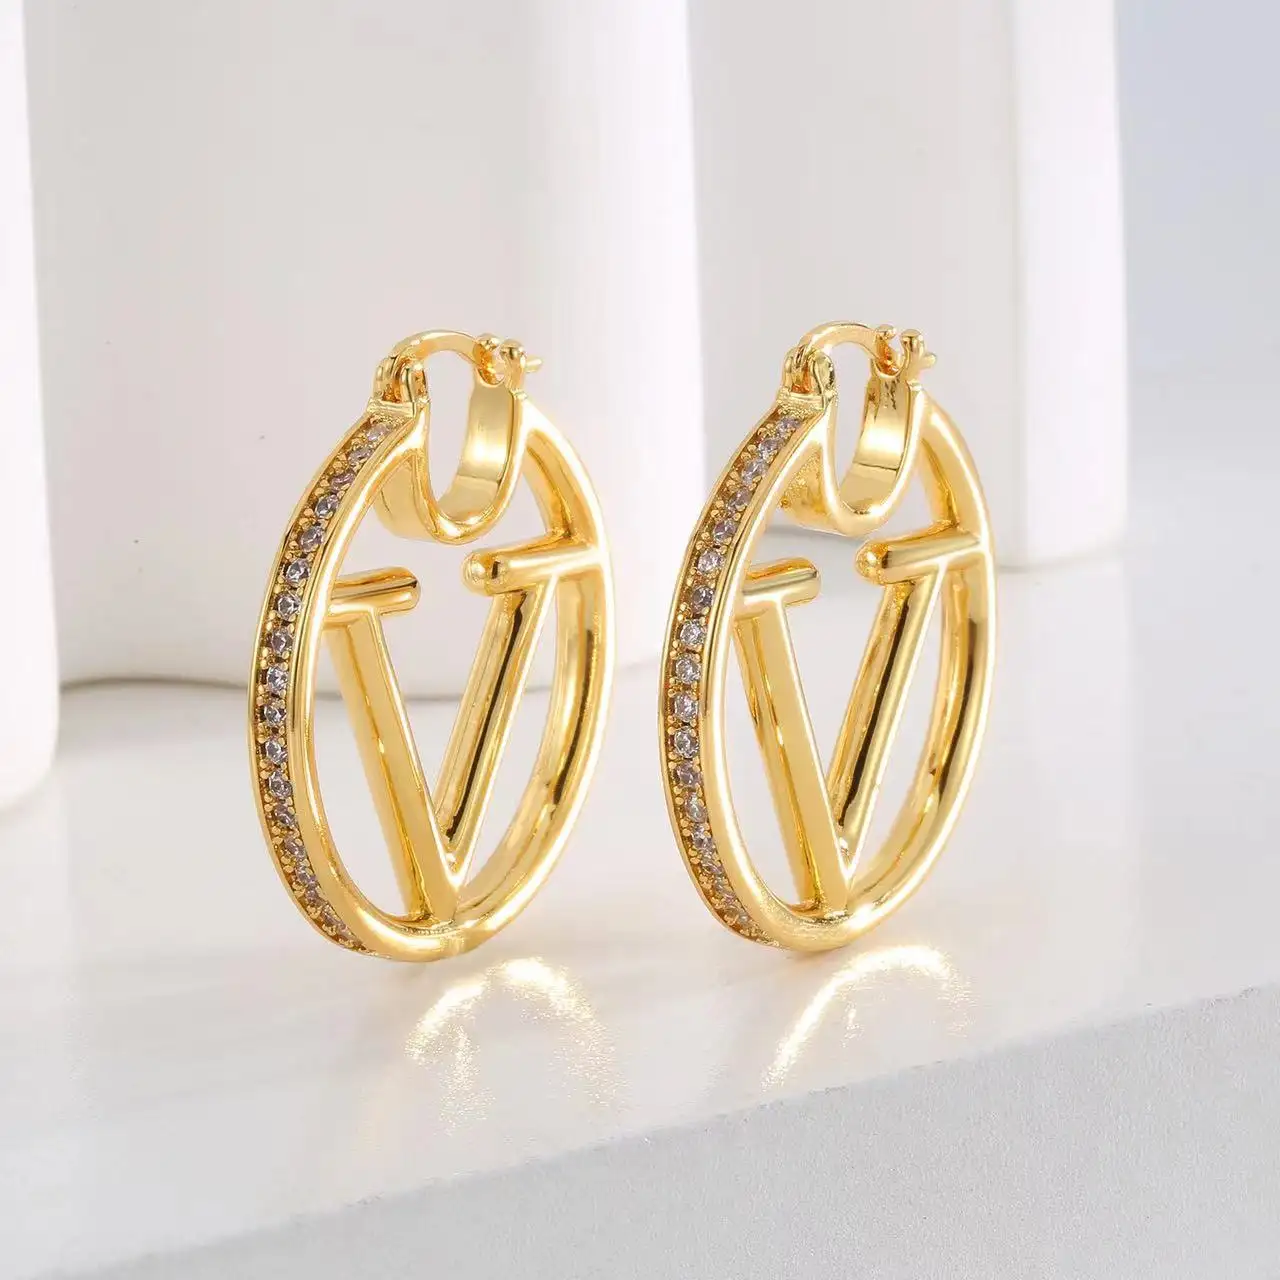 Nuevo diseñador de moda de lujo estilo Premium 18K oro letra V pendientes aro cristal pendientes joyería para mujer